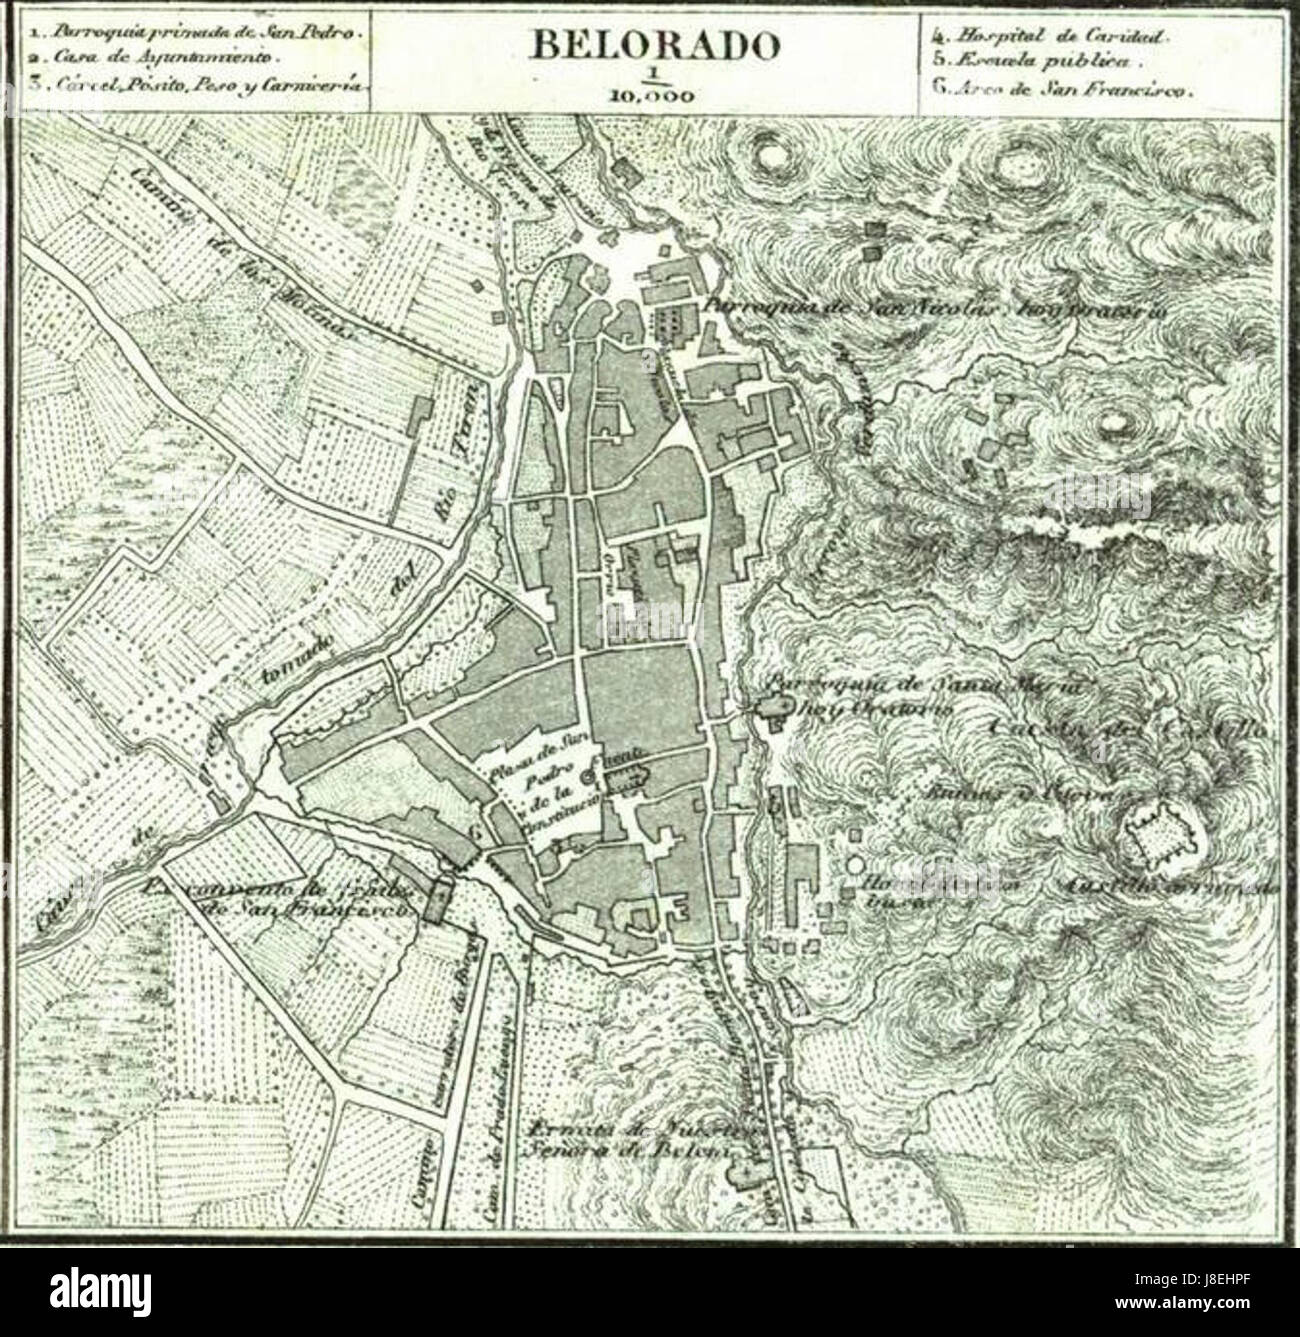 Mapa de Belorado (1868), por Francisco Coello Stock Photo